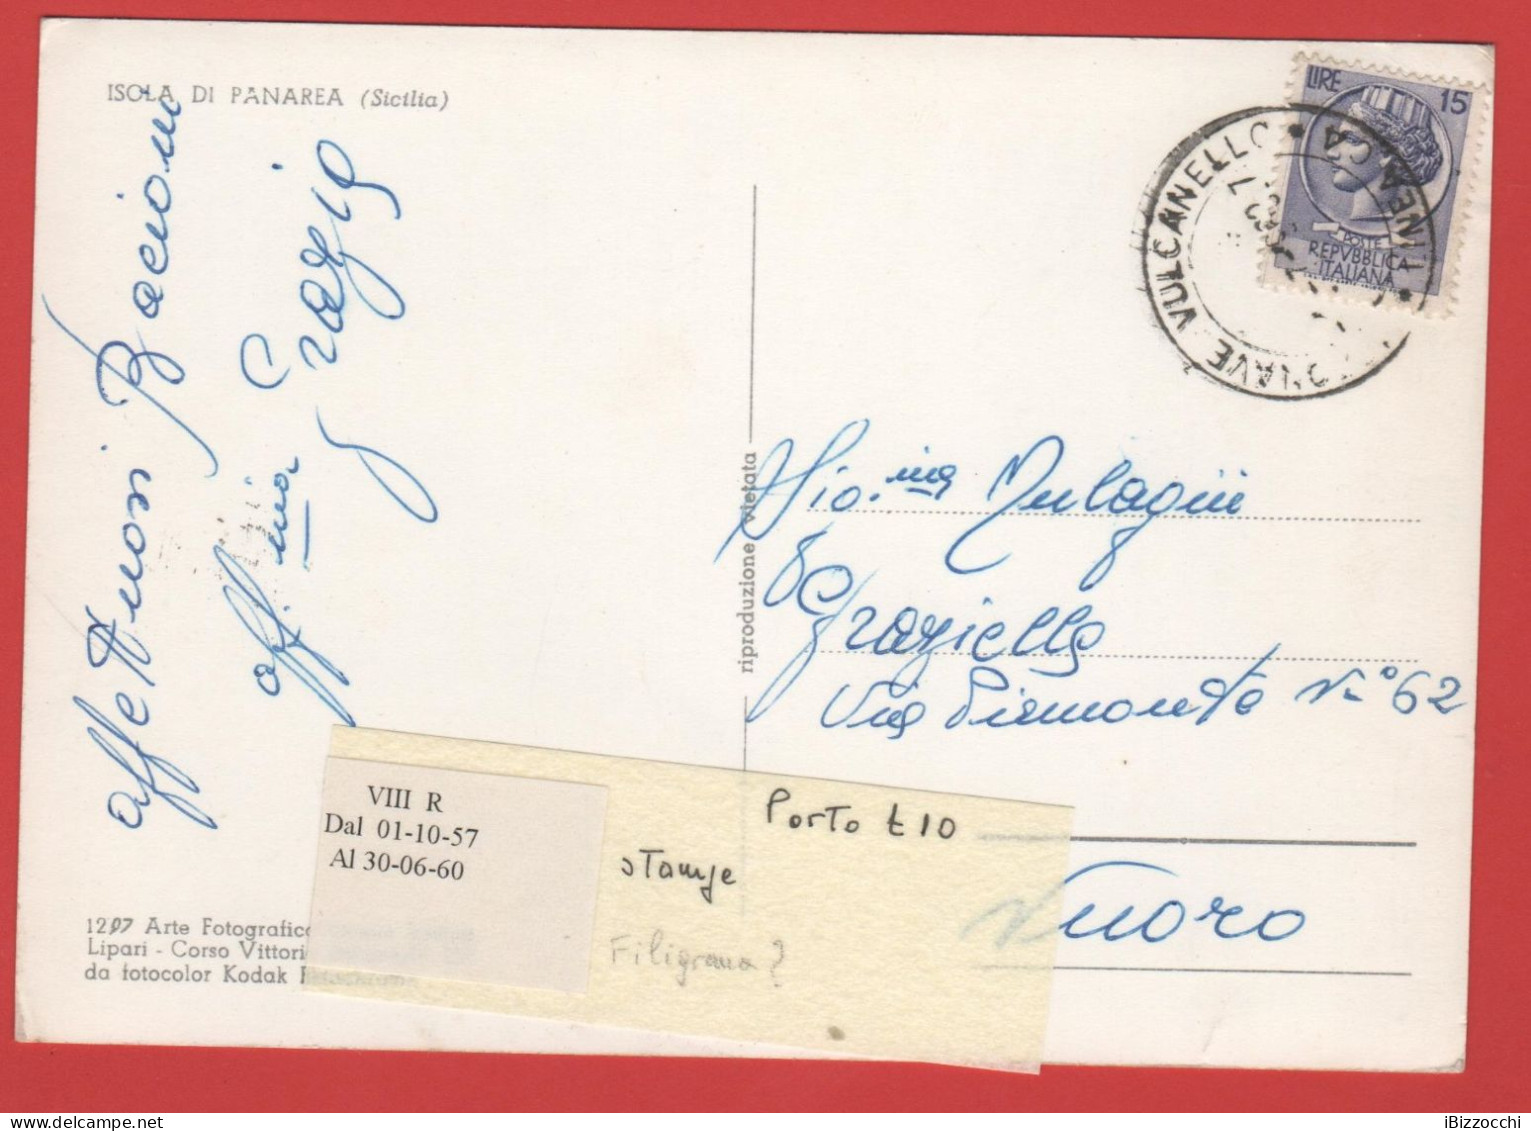 ITALIA - Storia Postale Repubblica - 1958 -  15 Antica Moneta Siracusana - Cartolina Dell'Isola Di Panarea  - Viaggiata - 1946-60: Marcophilie